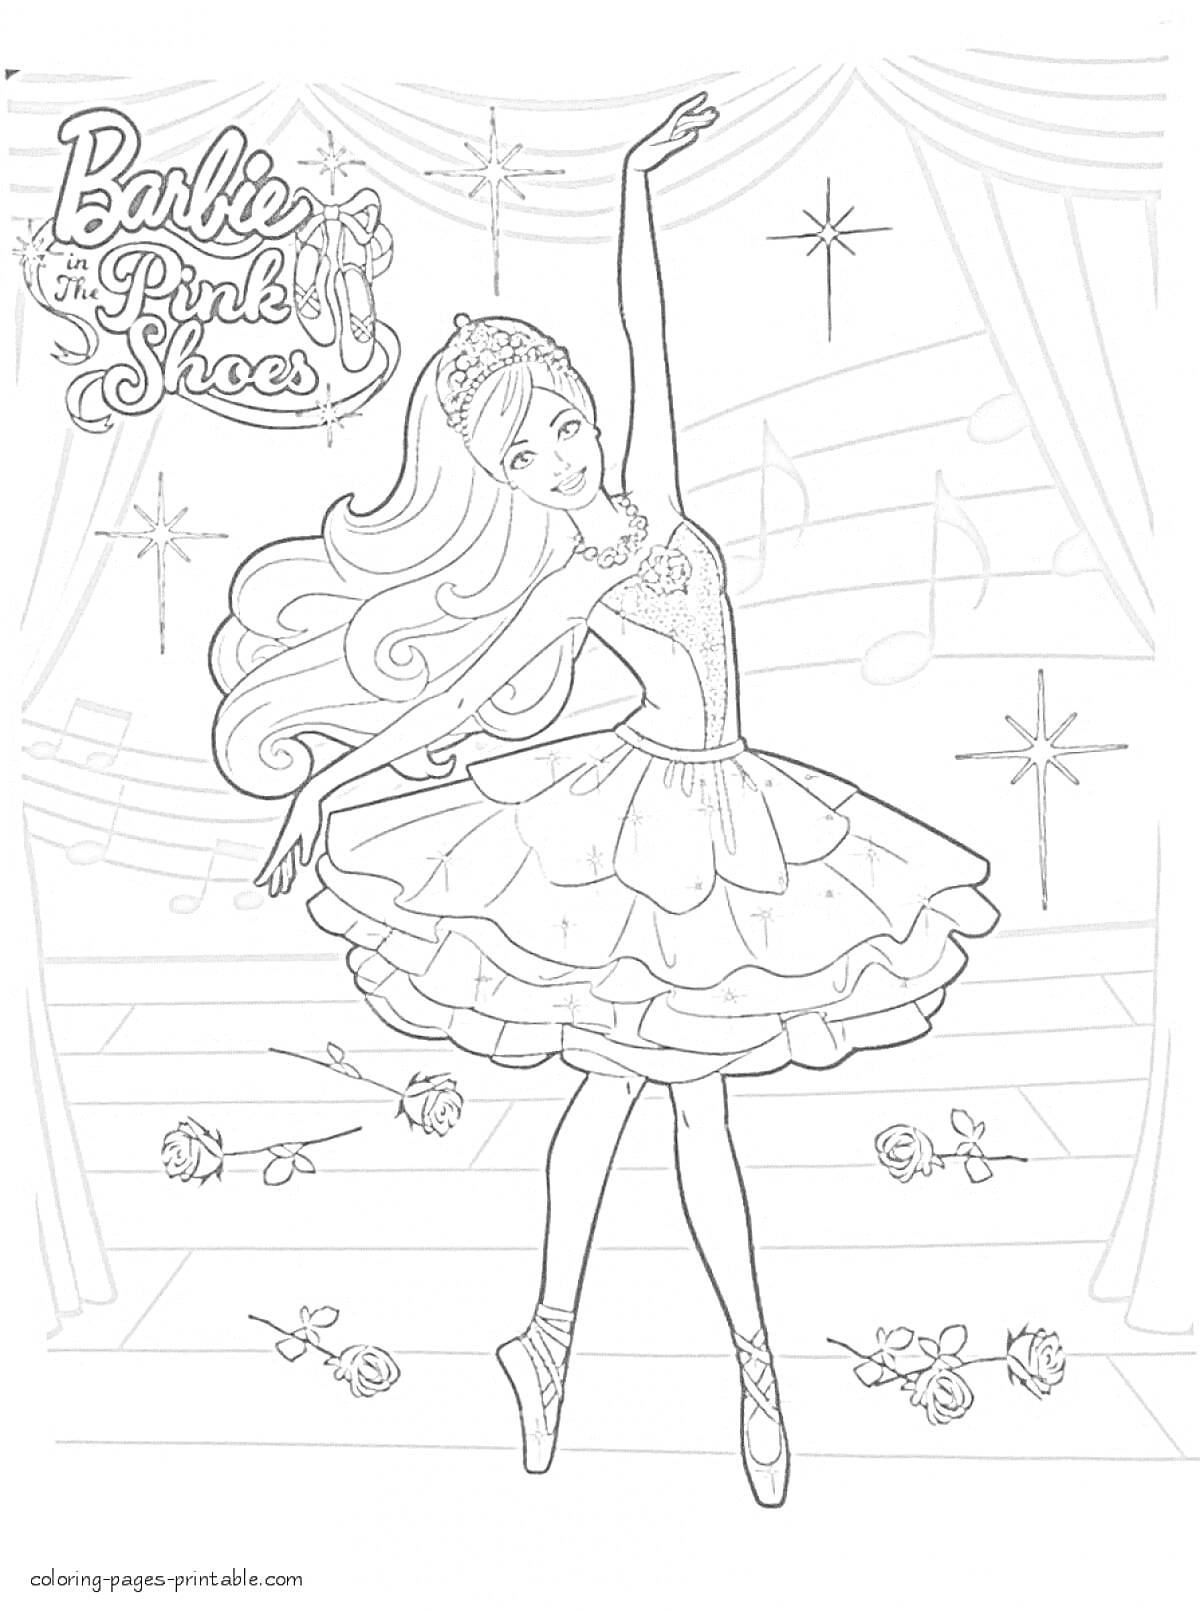 Раскраска Барби Робертс балерина на сцене с занавесом, музыкальными нотами и розами